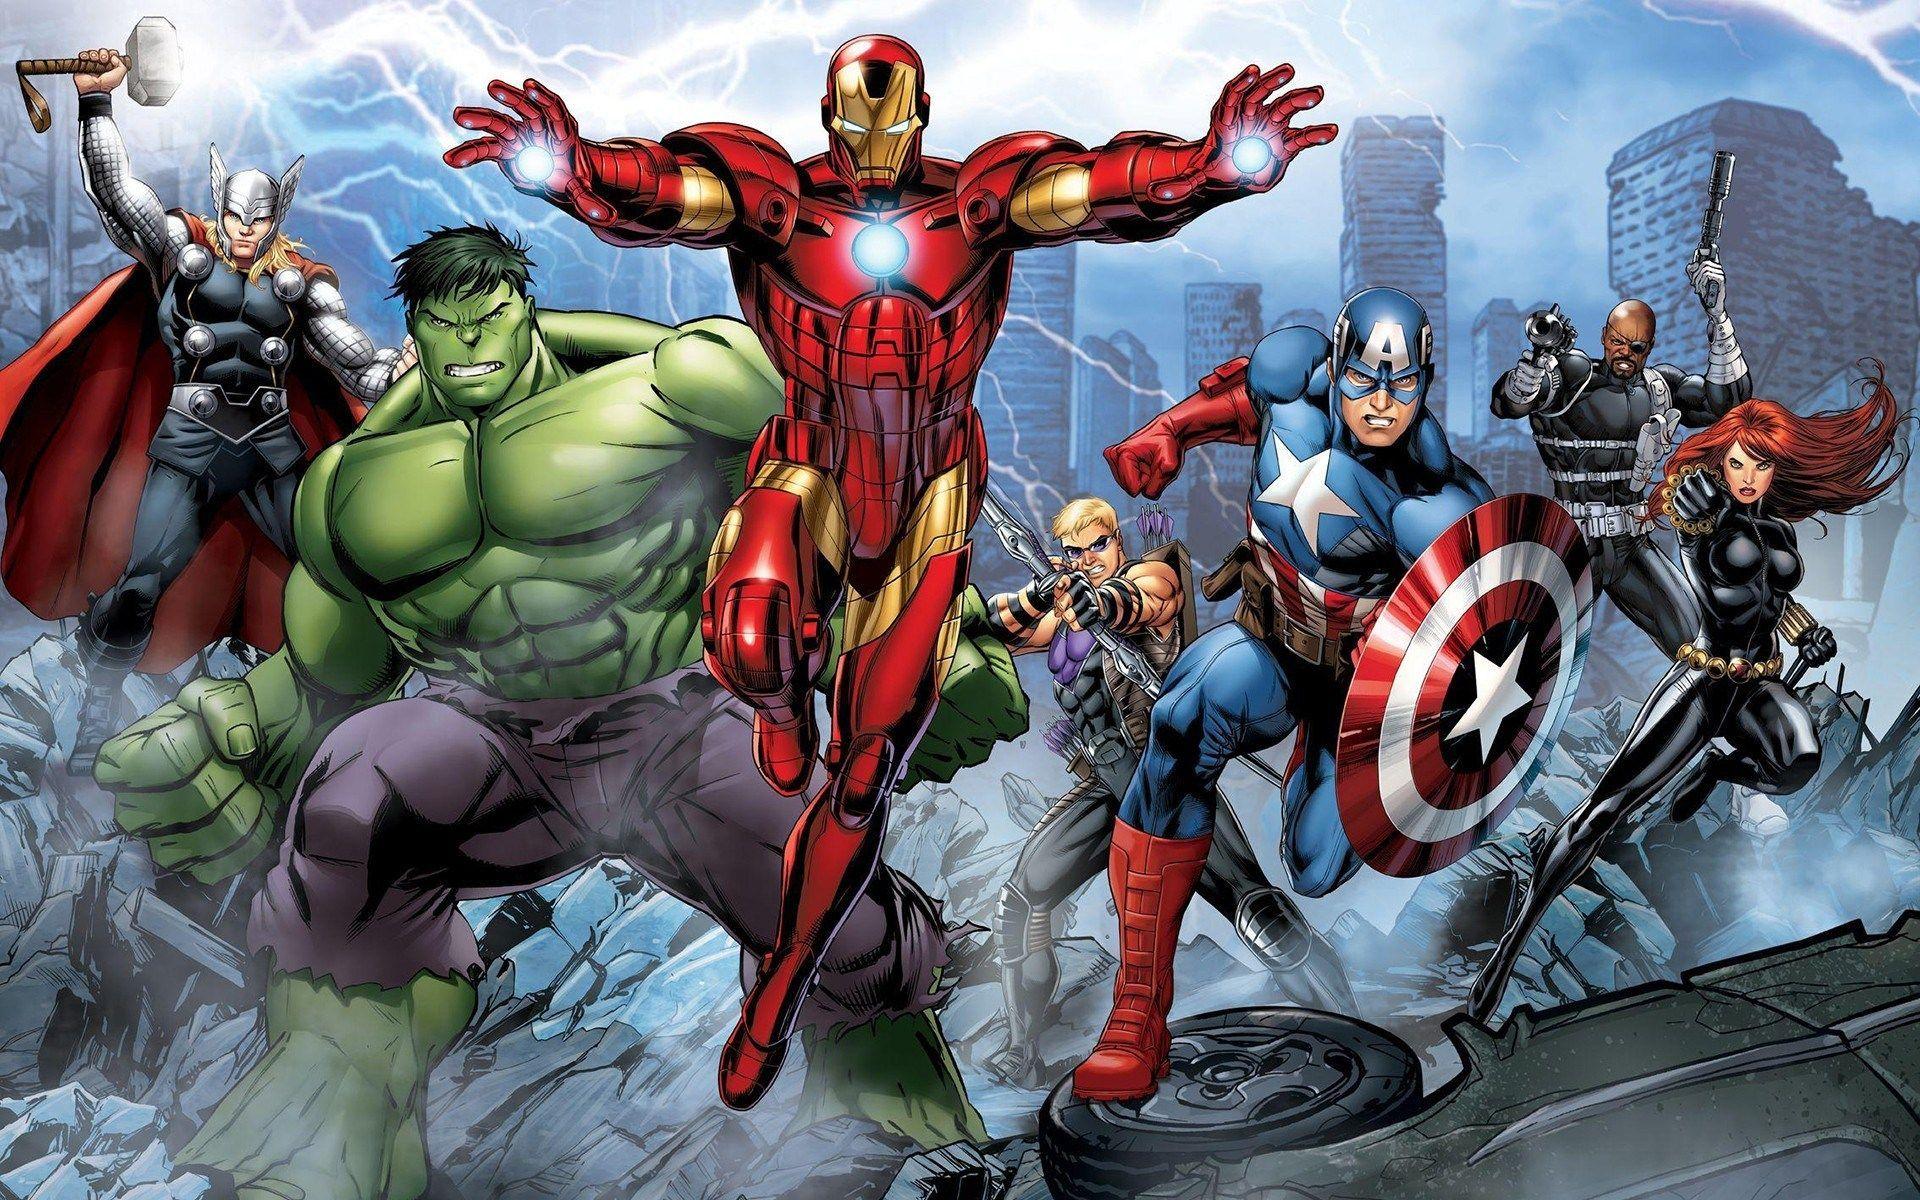 The Avengers Assemble Cartoon HD Wallpaper. avanger in 2019